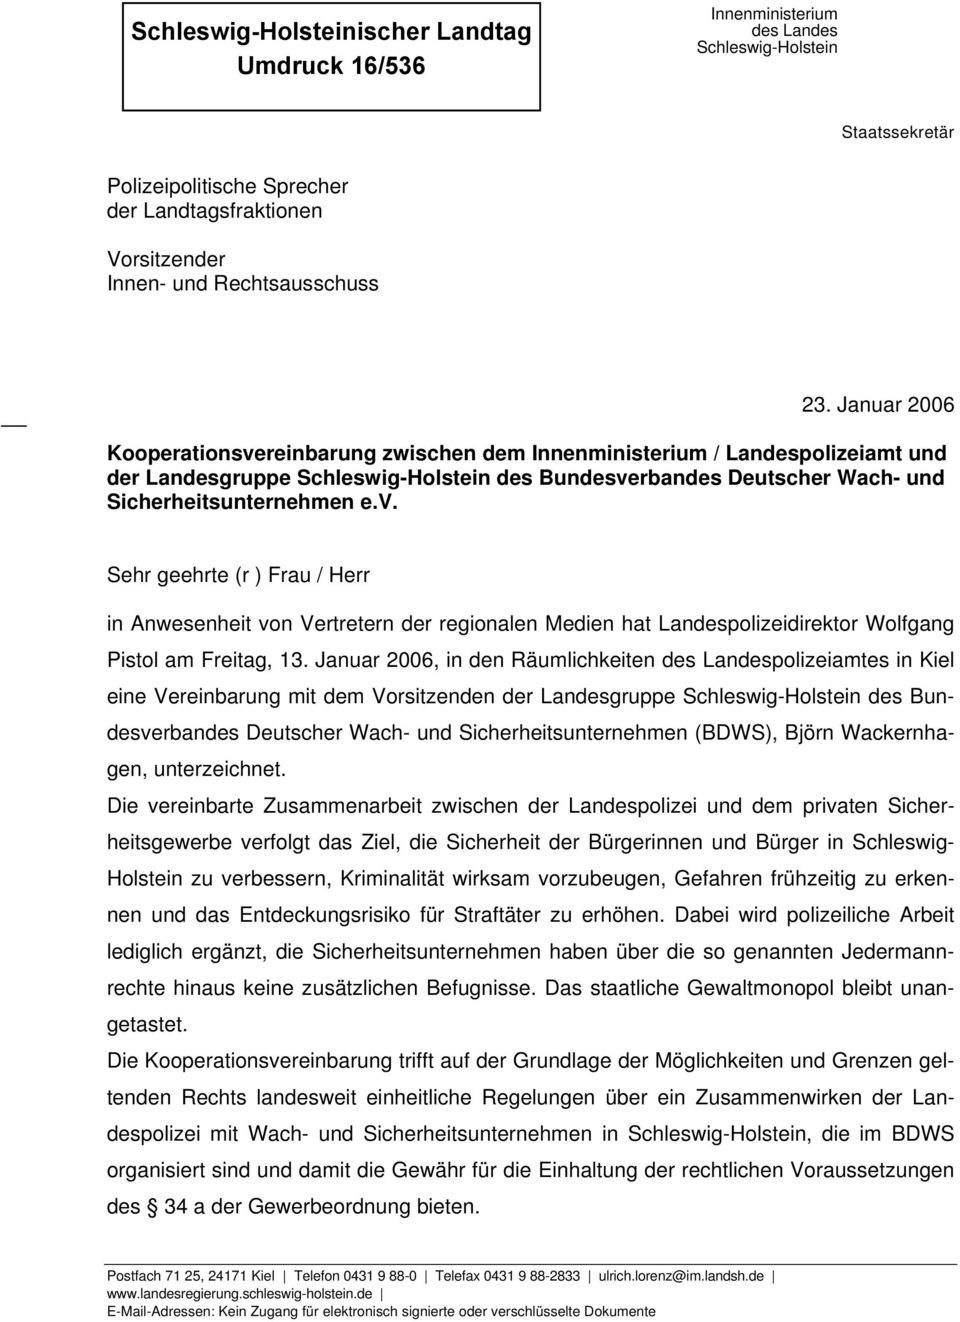 Januar 2006, in den Räumlichkeiten des Landespolizeiamtes in Kiel eine Vereinbarung mit dem Vorsitzenden der Landesgruppe Schleswig-Holstein des Bundesverbandes Deutscher Wach- und